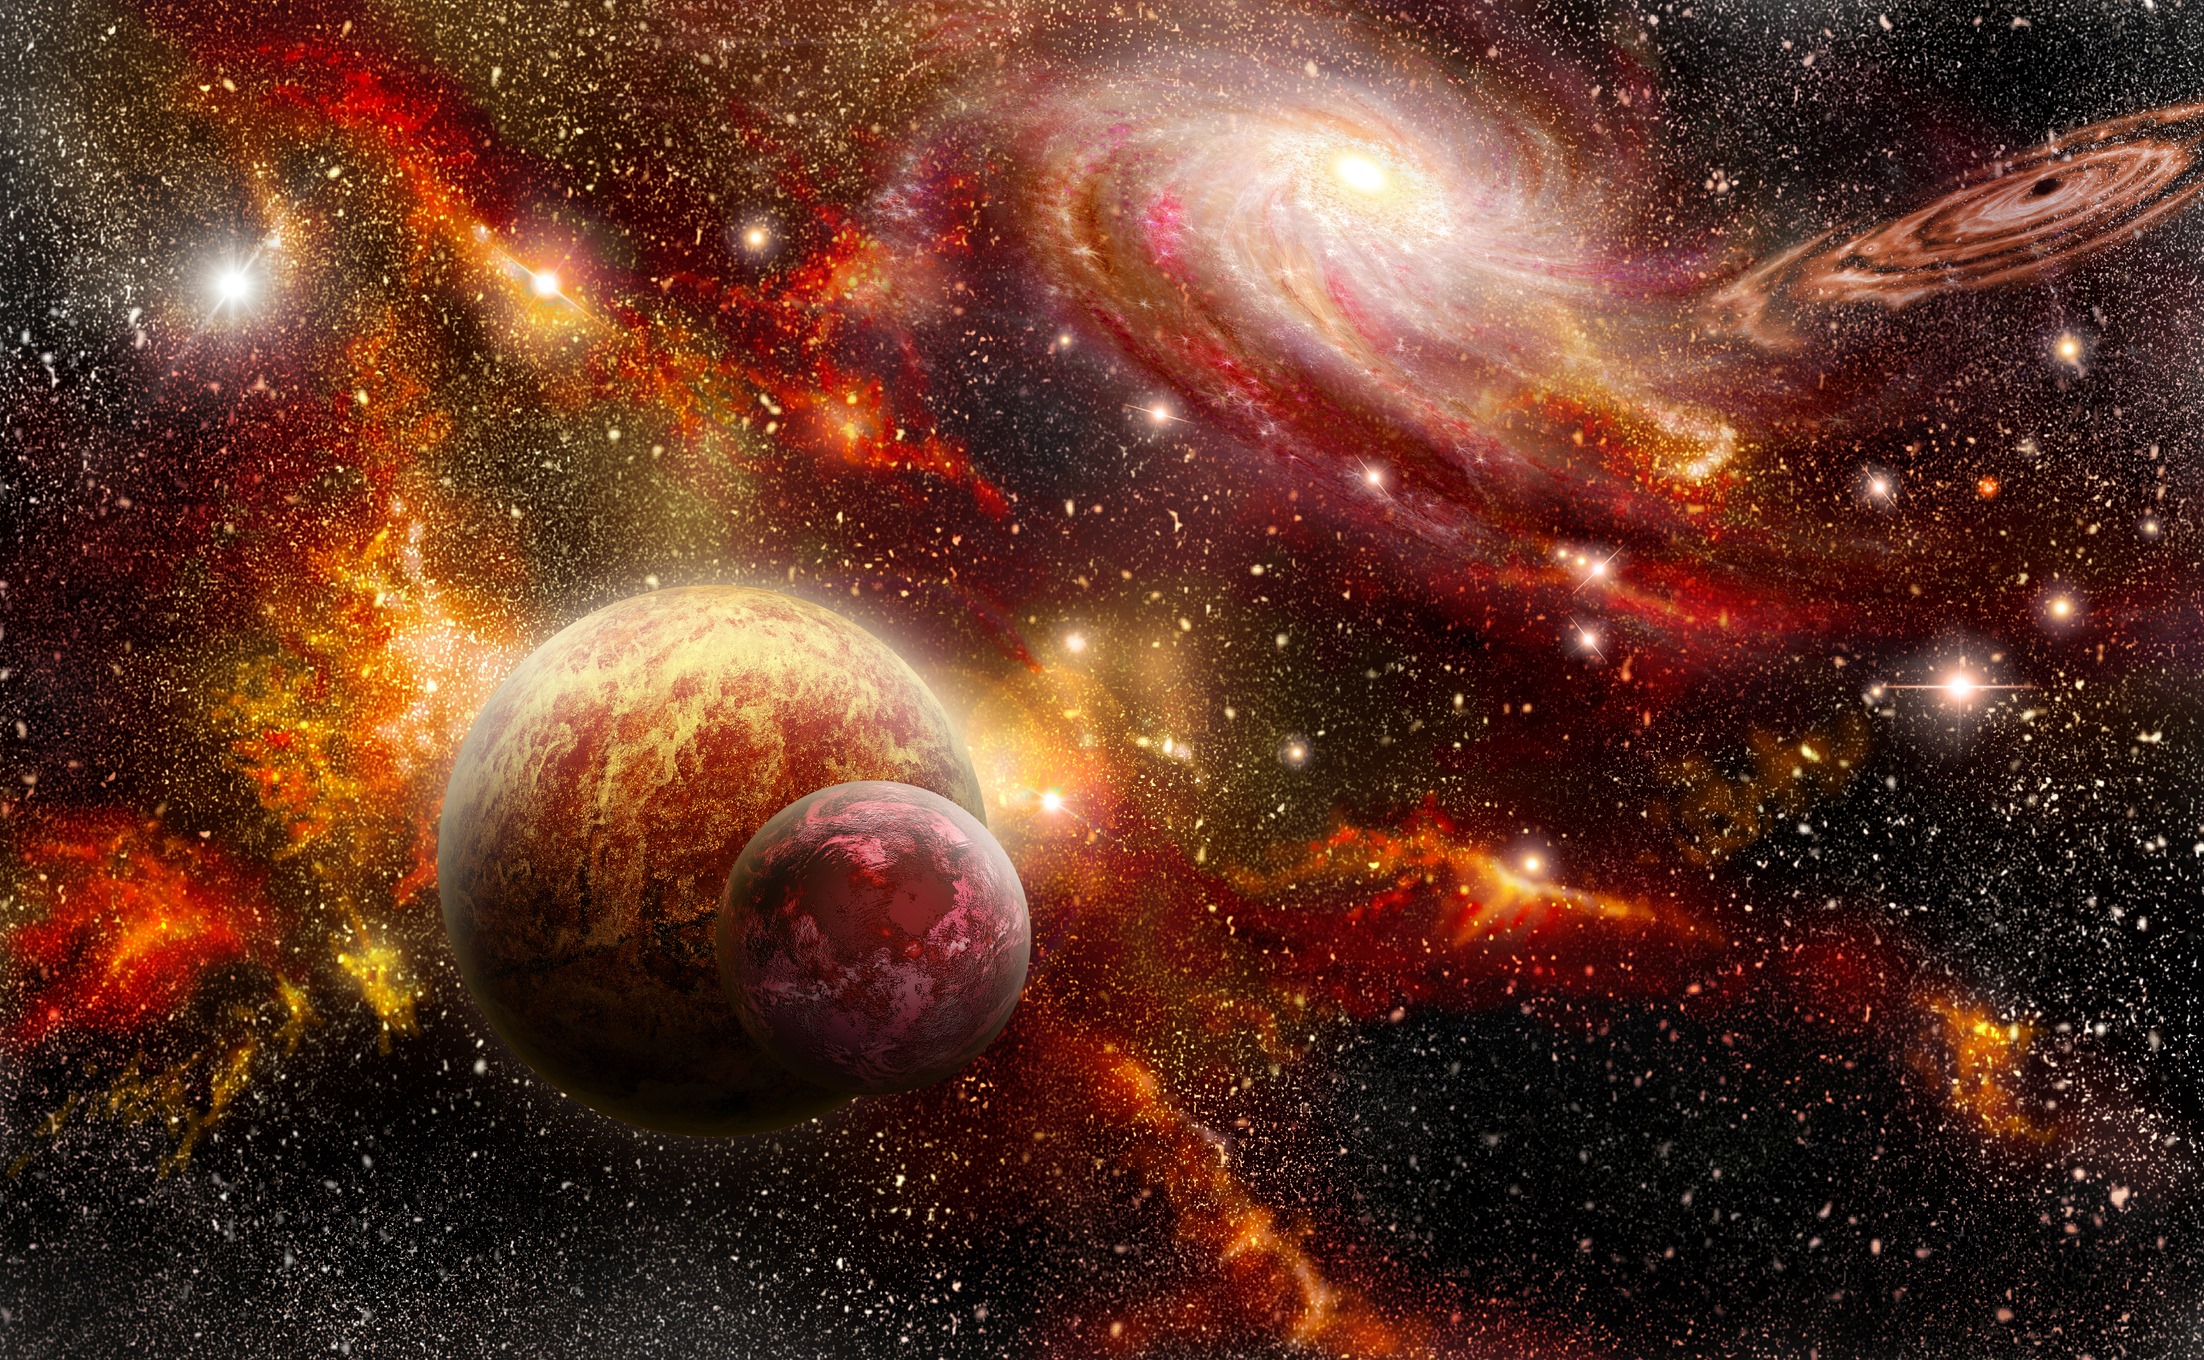 doua planete in galarie, alaturi de corpuri ceresti luminoase, imagine furnizata de NASA